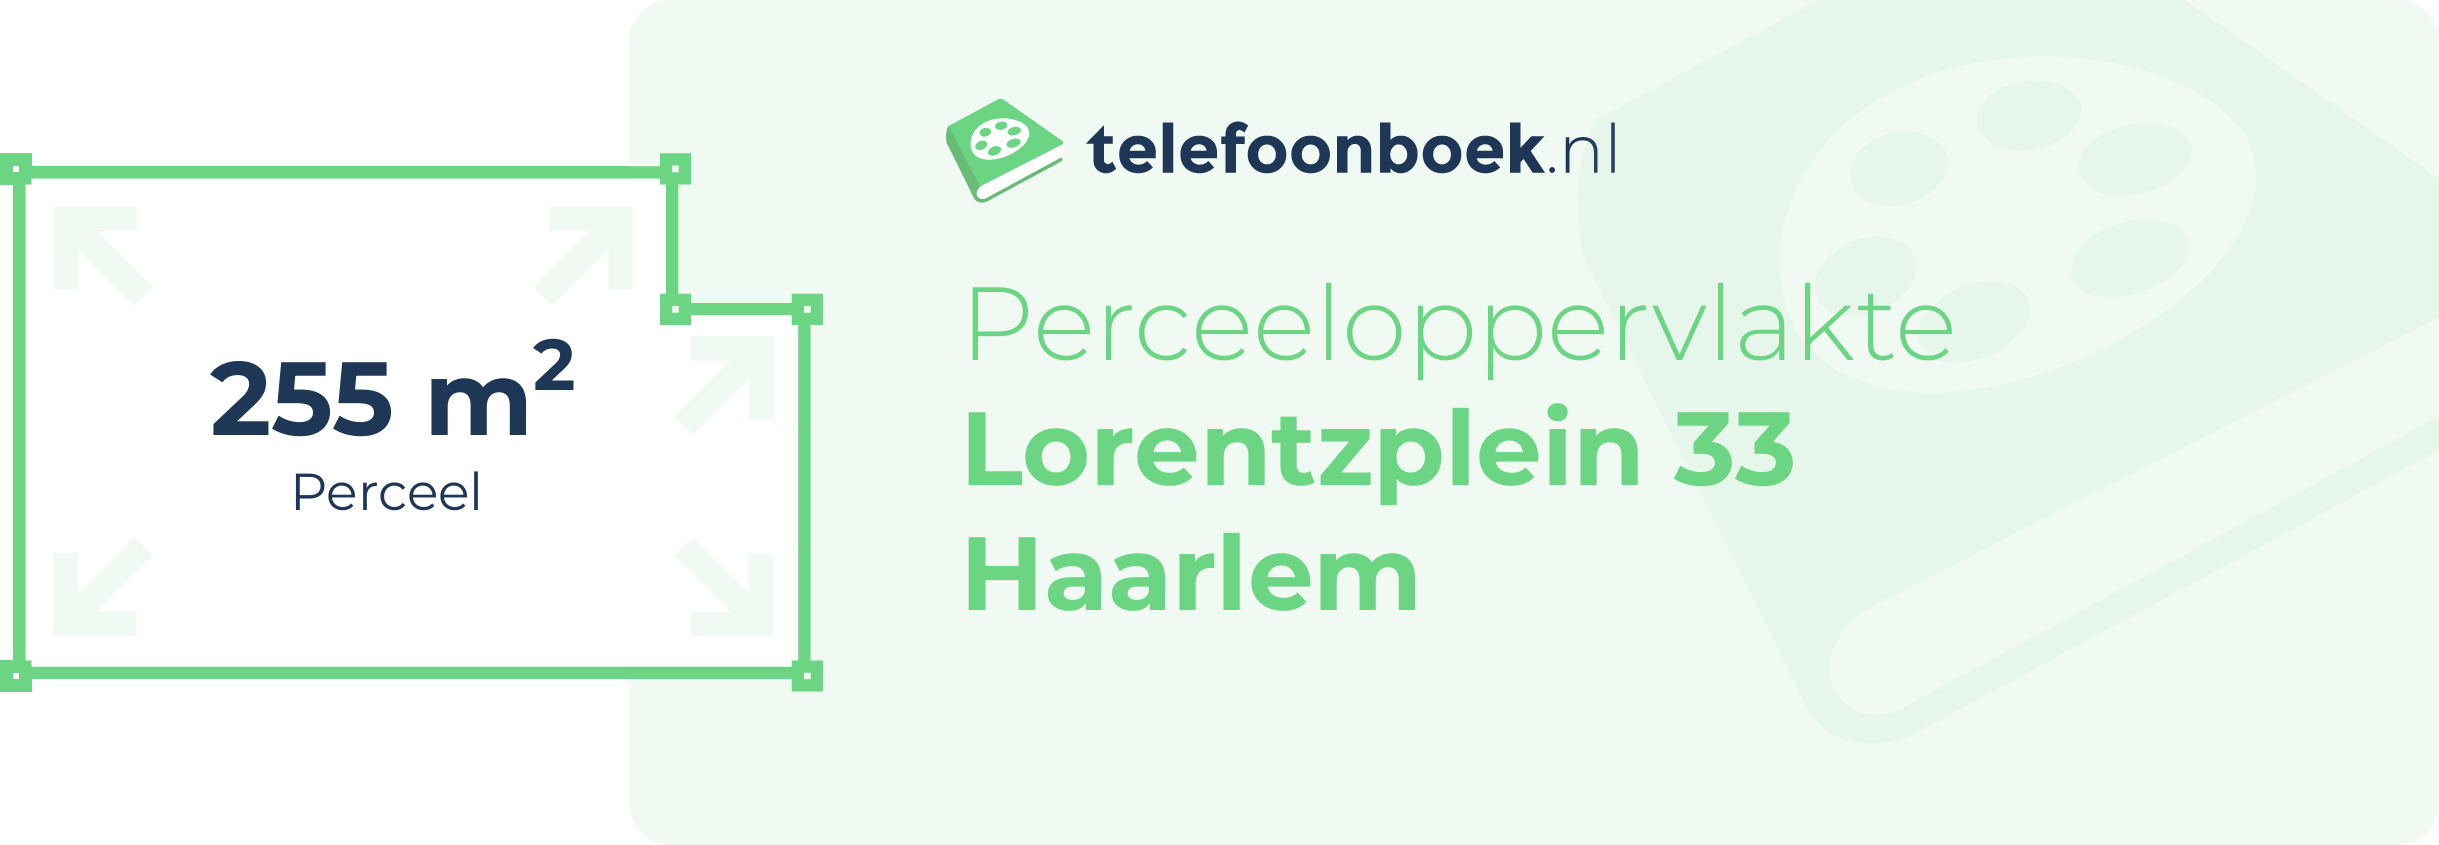 Perceeloppervlakte Lorentzplein 33 Haarlem